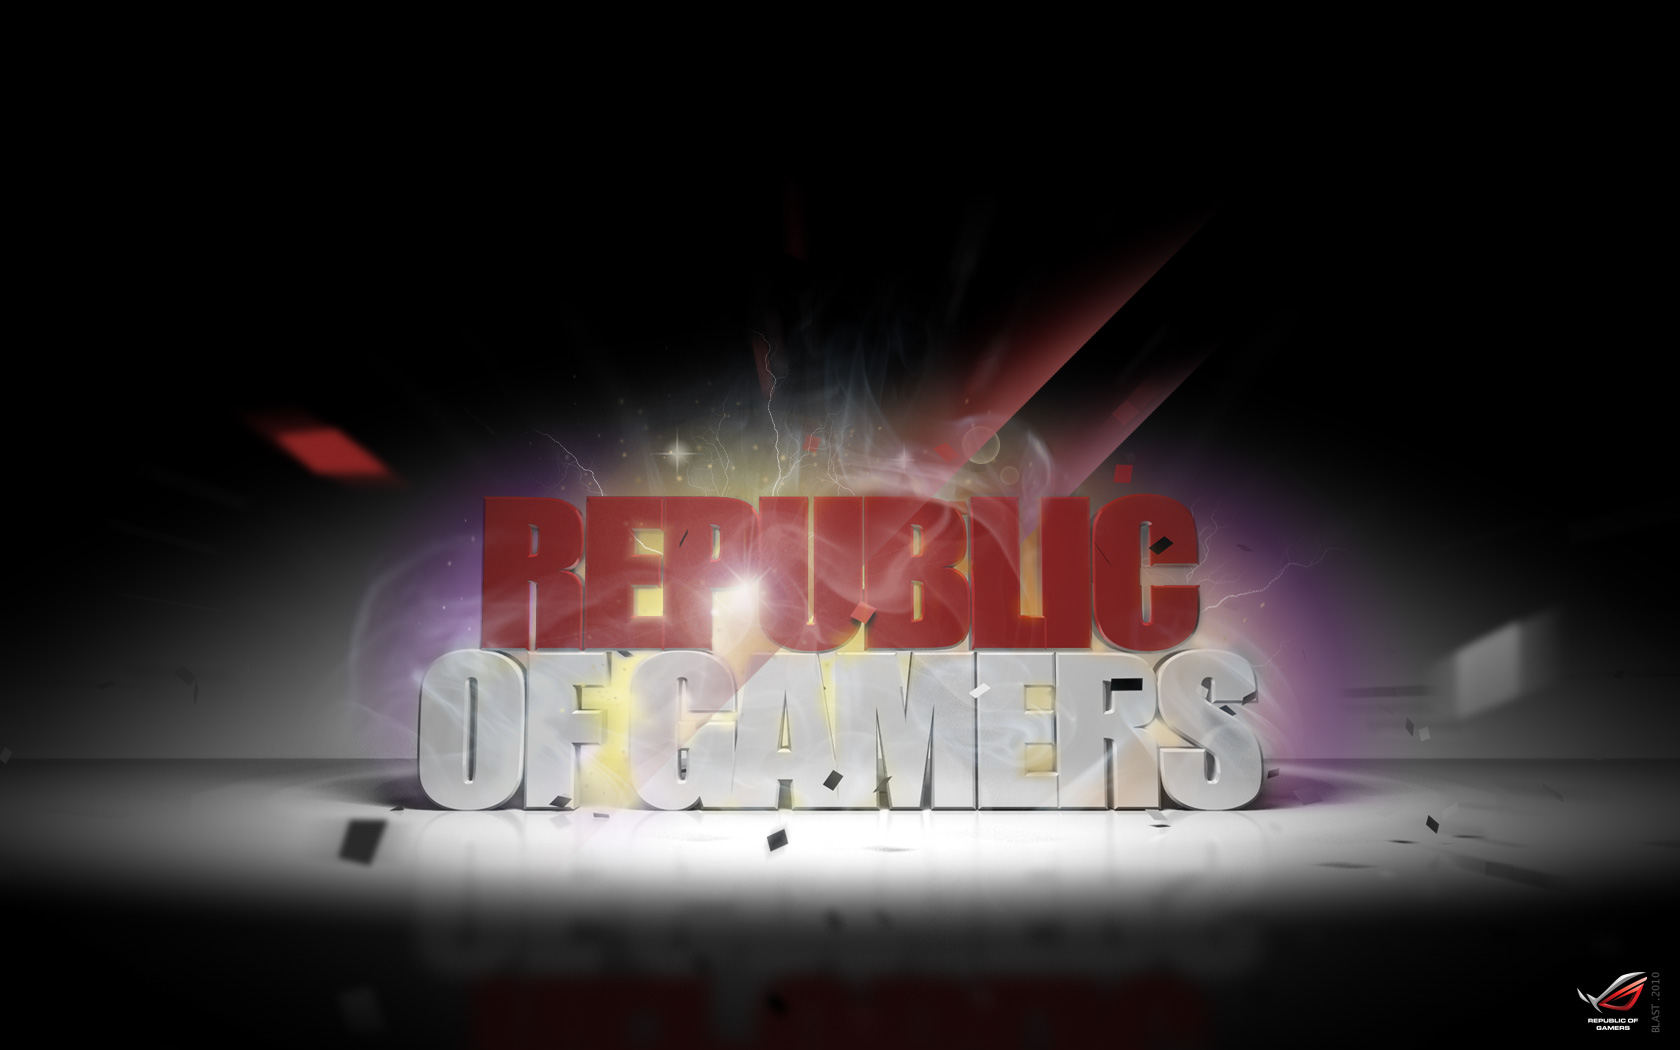 Republic of gamers wallpaper > 3d Papel de parede > 3d Fondos 